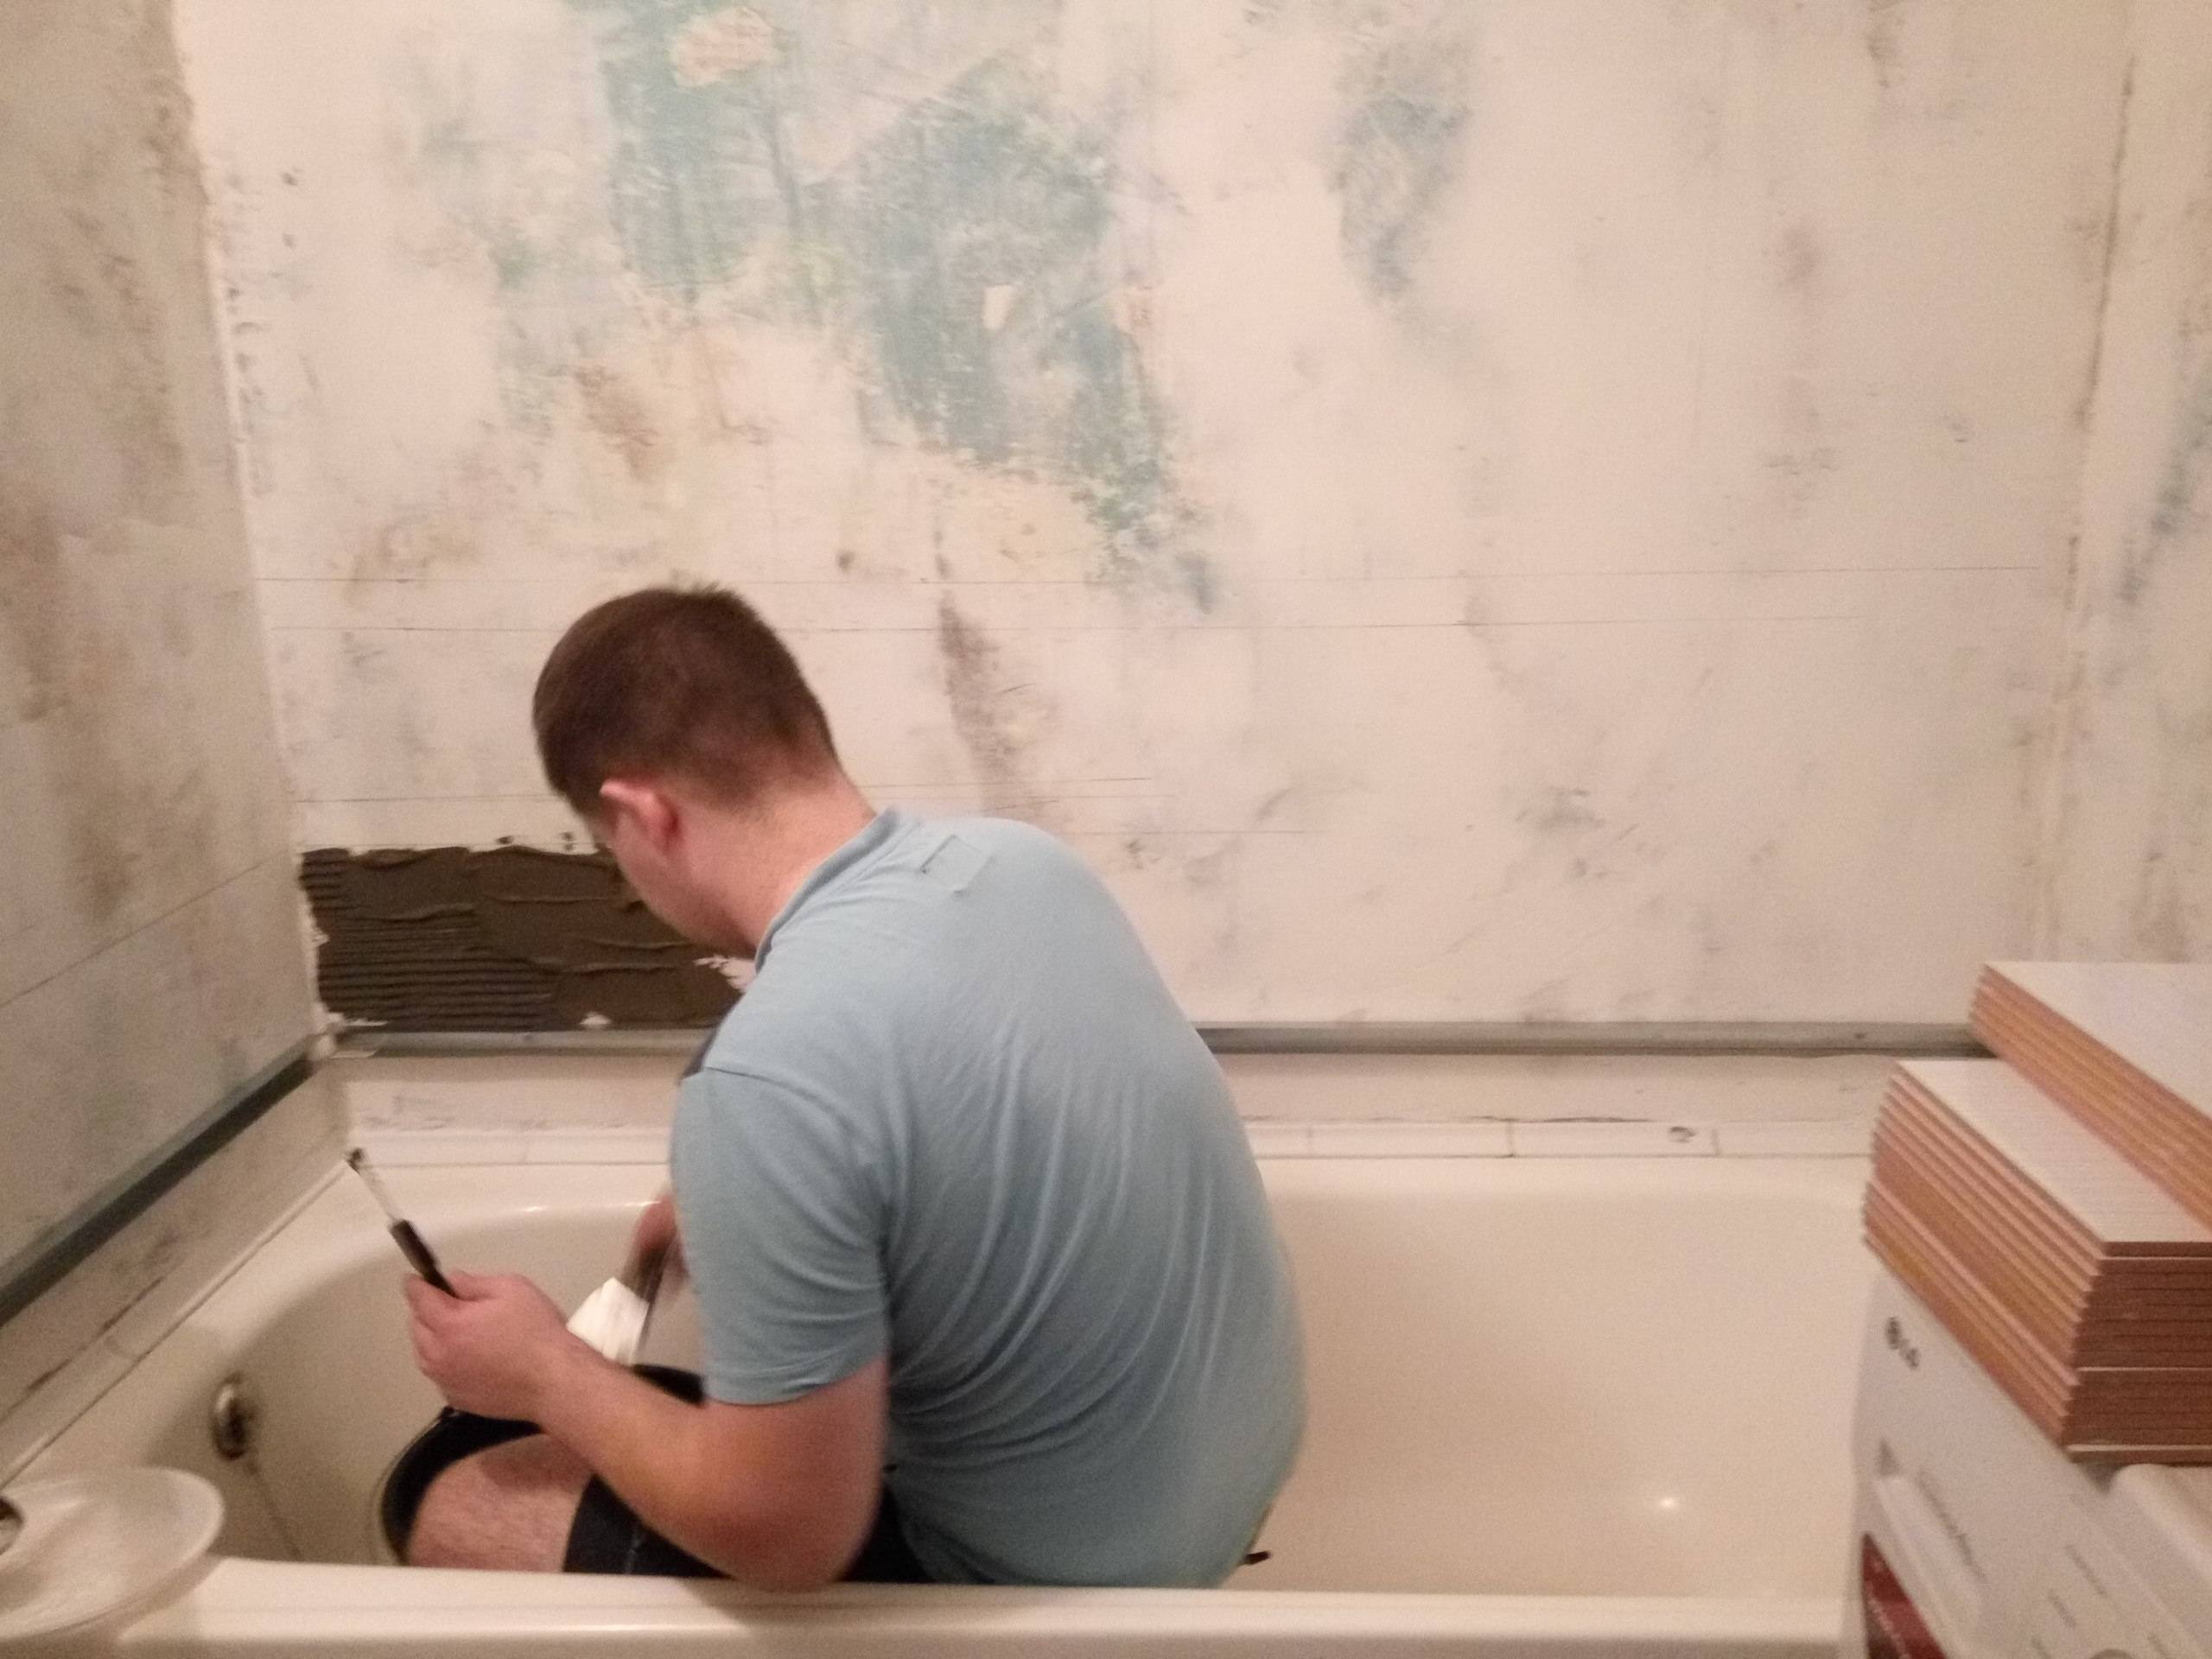 Планирование ремонта ванной и туалета своими руками